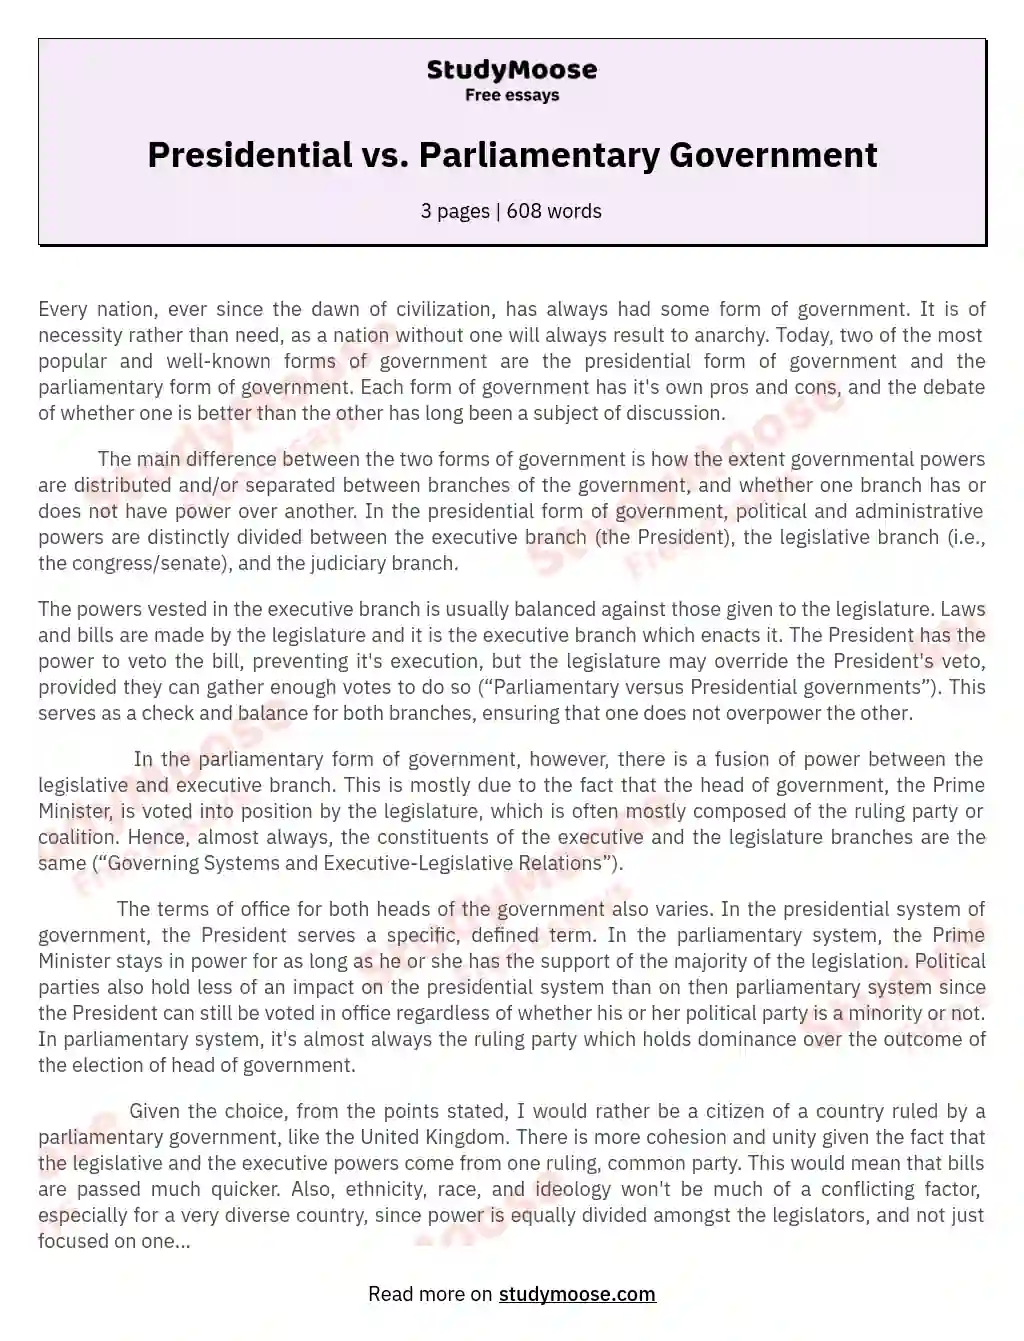 Presidential vs. Parliamentary Government essay